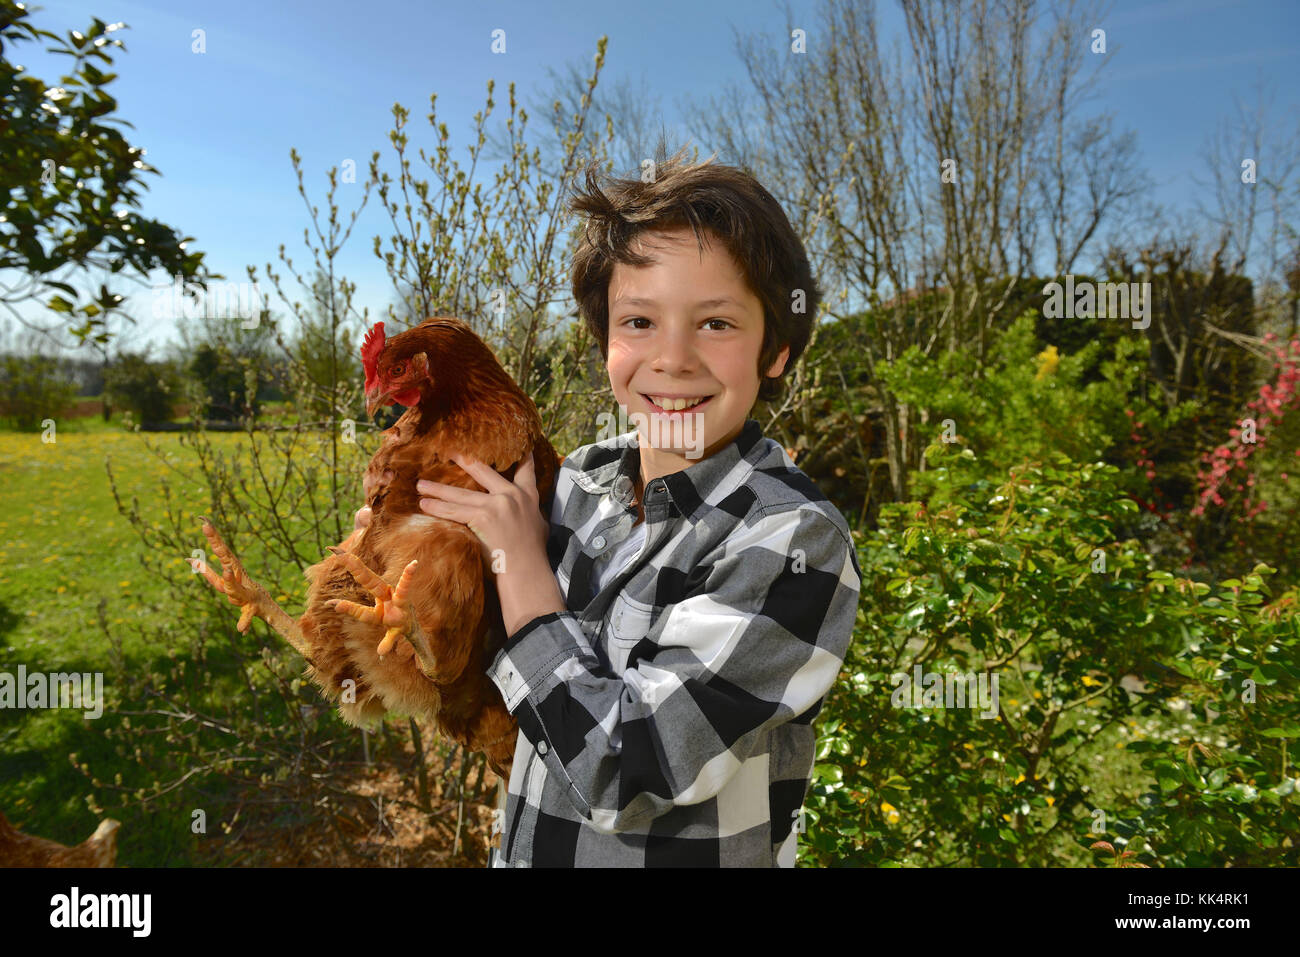 Kind mit seiner Henne. Veröffentlichung rechte OK Stockfoto